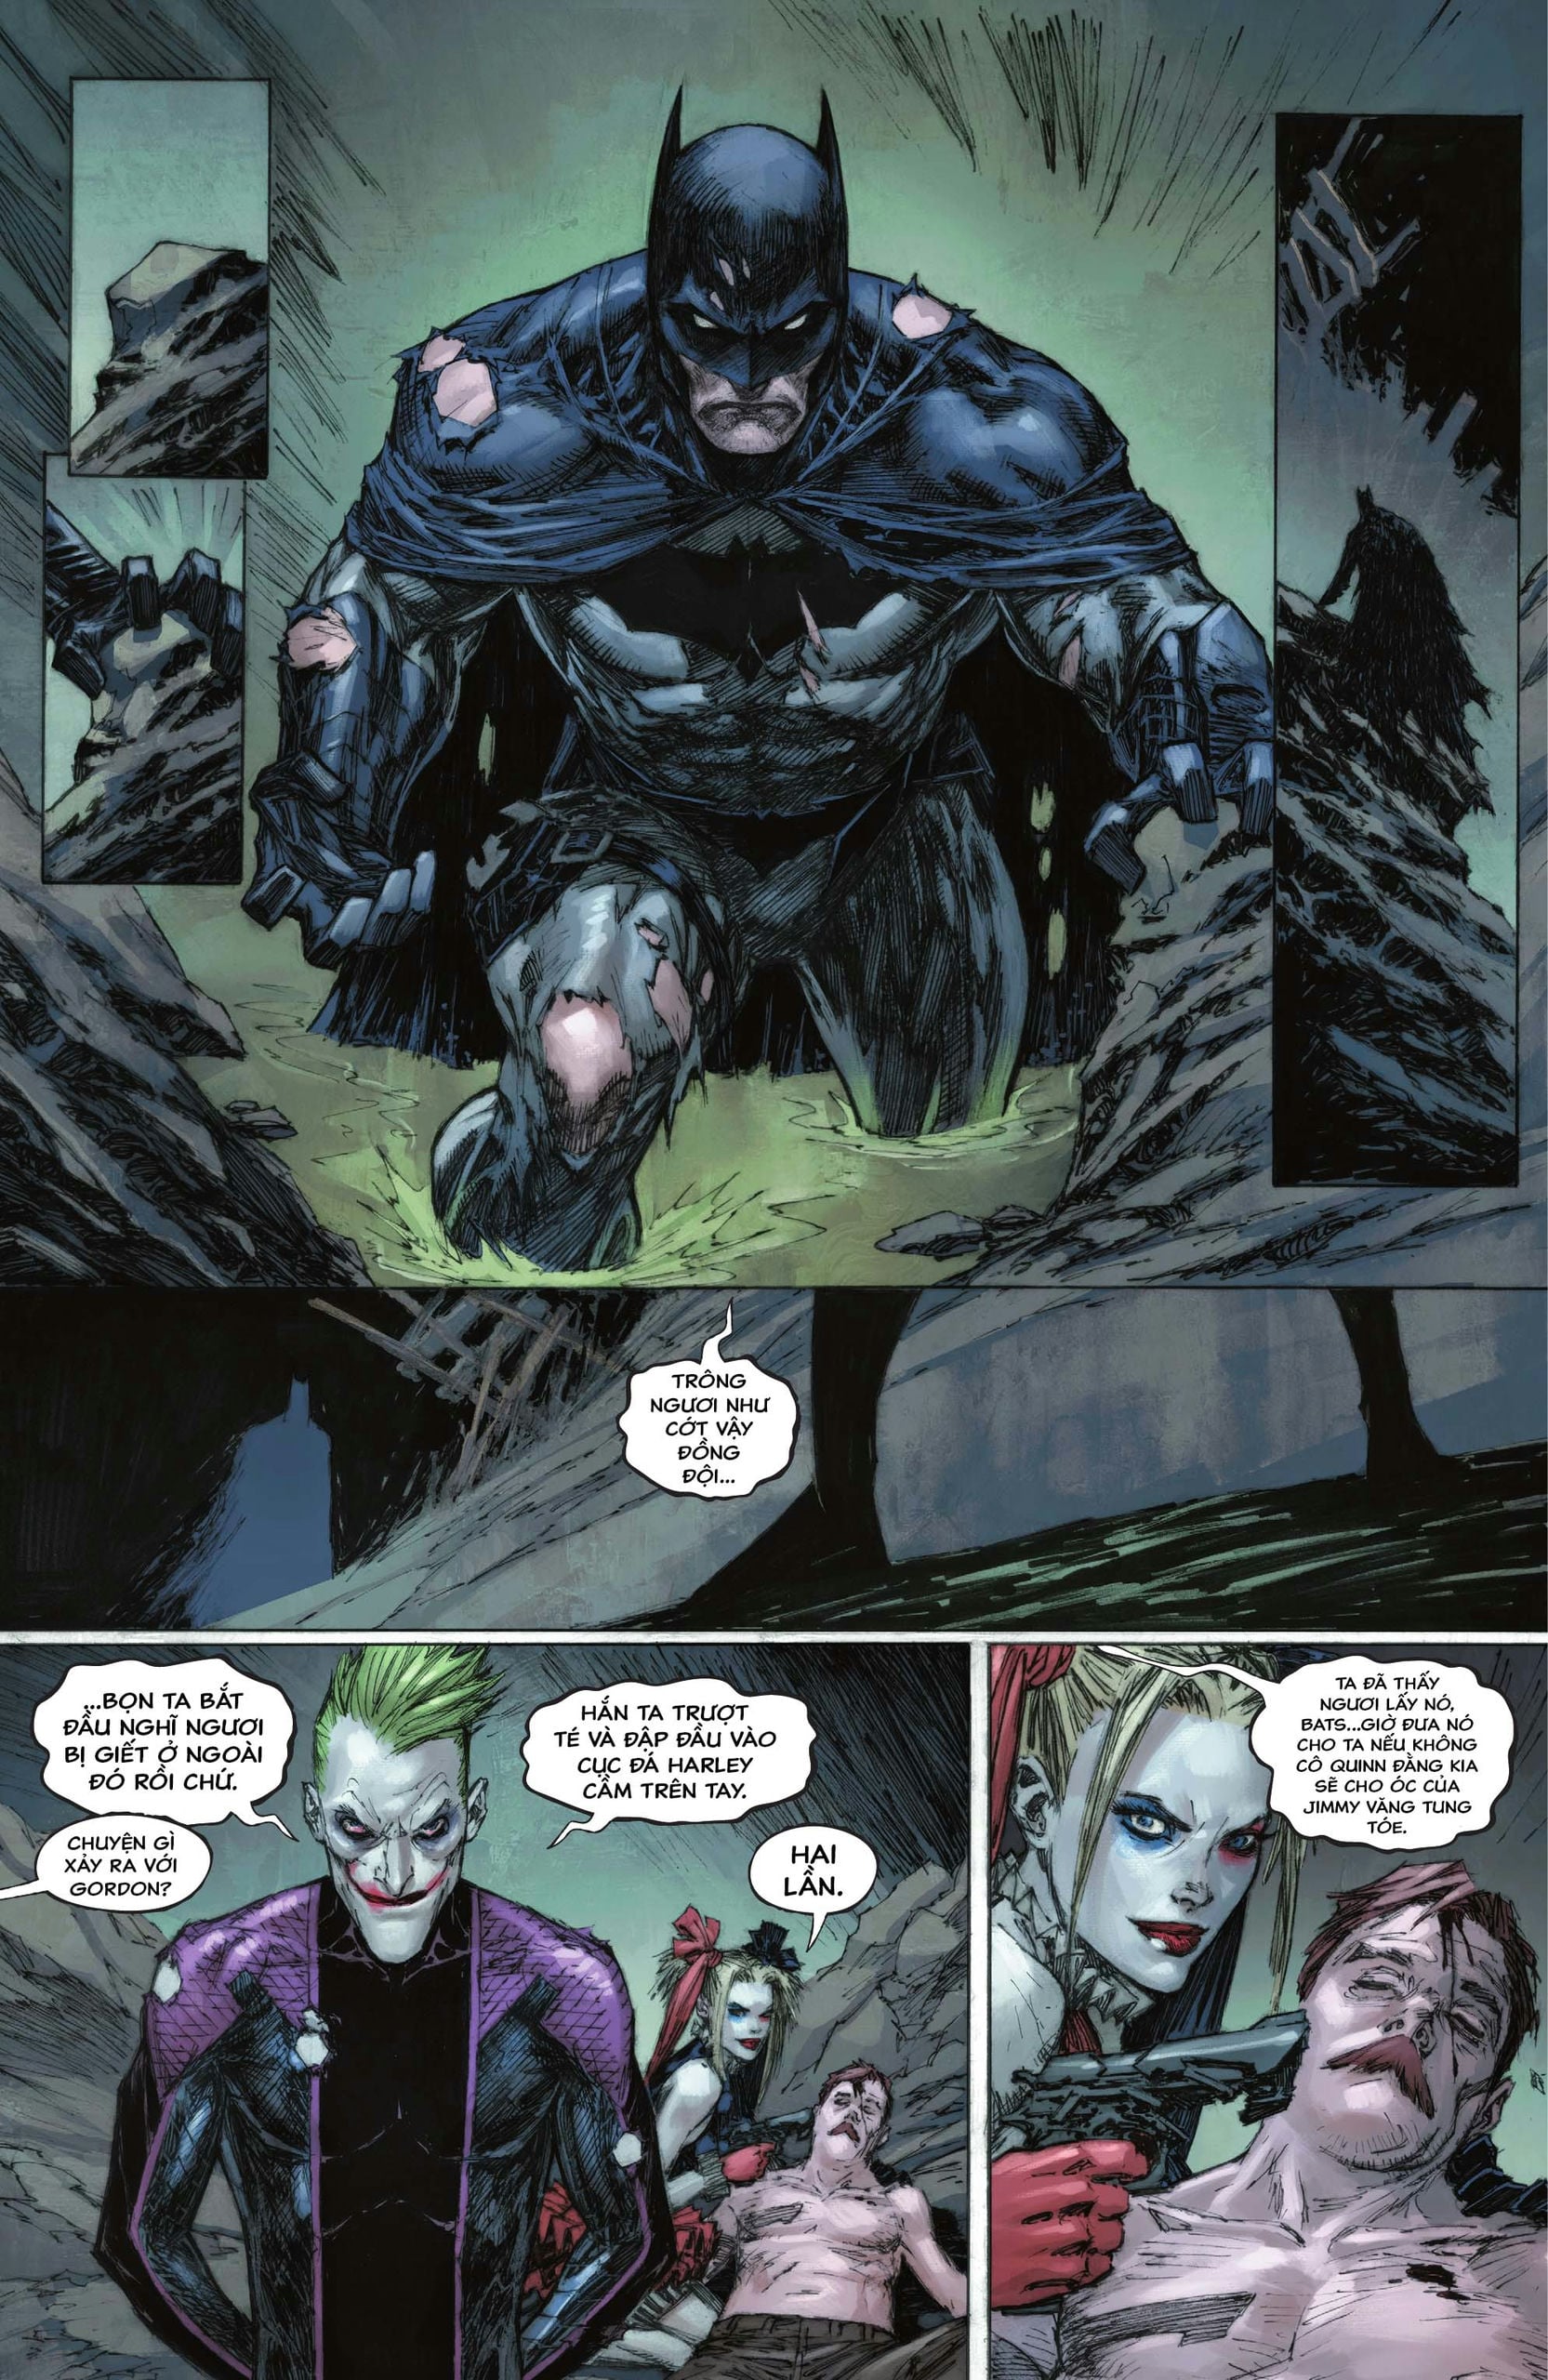 https://langgeek.net/wp-content/webpc-passthru.php?src=https://langgeek.net/wp-content/uploads/2023/05/Batman-_-The-Joker-The-Deadly-Duo-2022-006-021.jpg&nocache=1